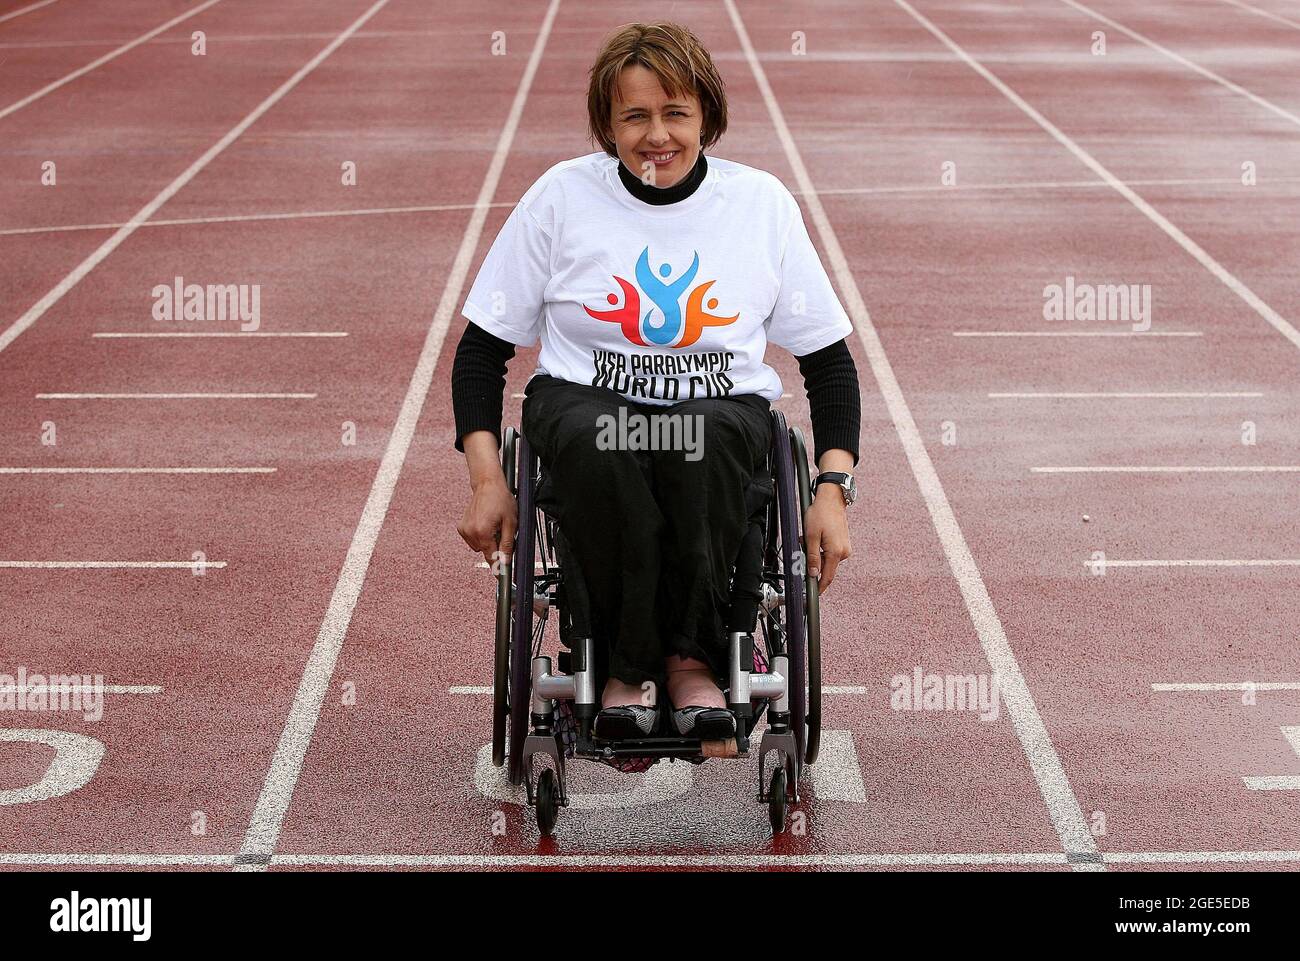 File photo datato 08-05-2007 di Dame Tanni Grey-Thompson durante una conferenza stampa per la Coppa del mondo VISA Paralimpic a Sportcity, Manchester. Data di emissione: Martedì 17 agosto 2021. Foto Stock